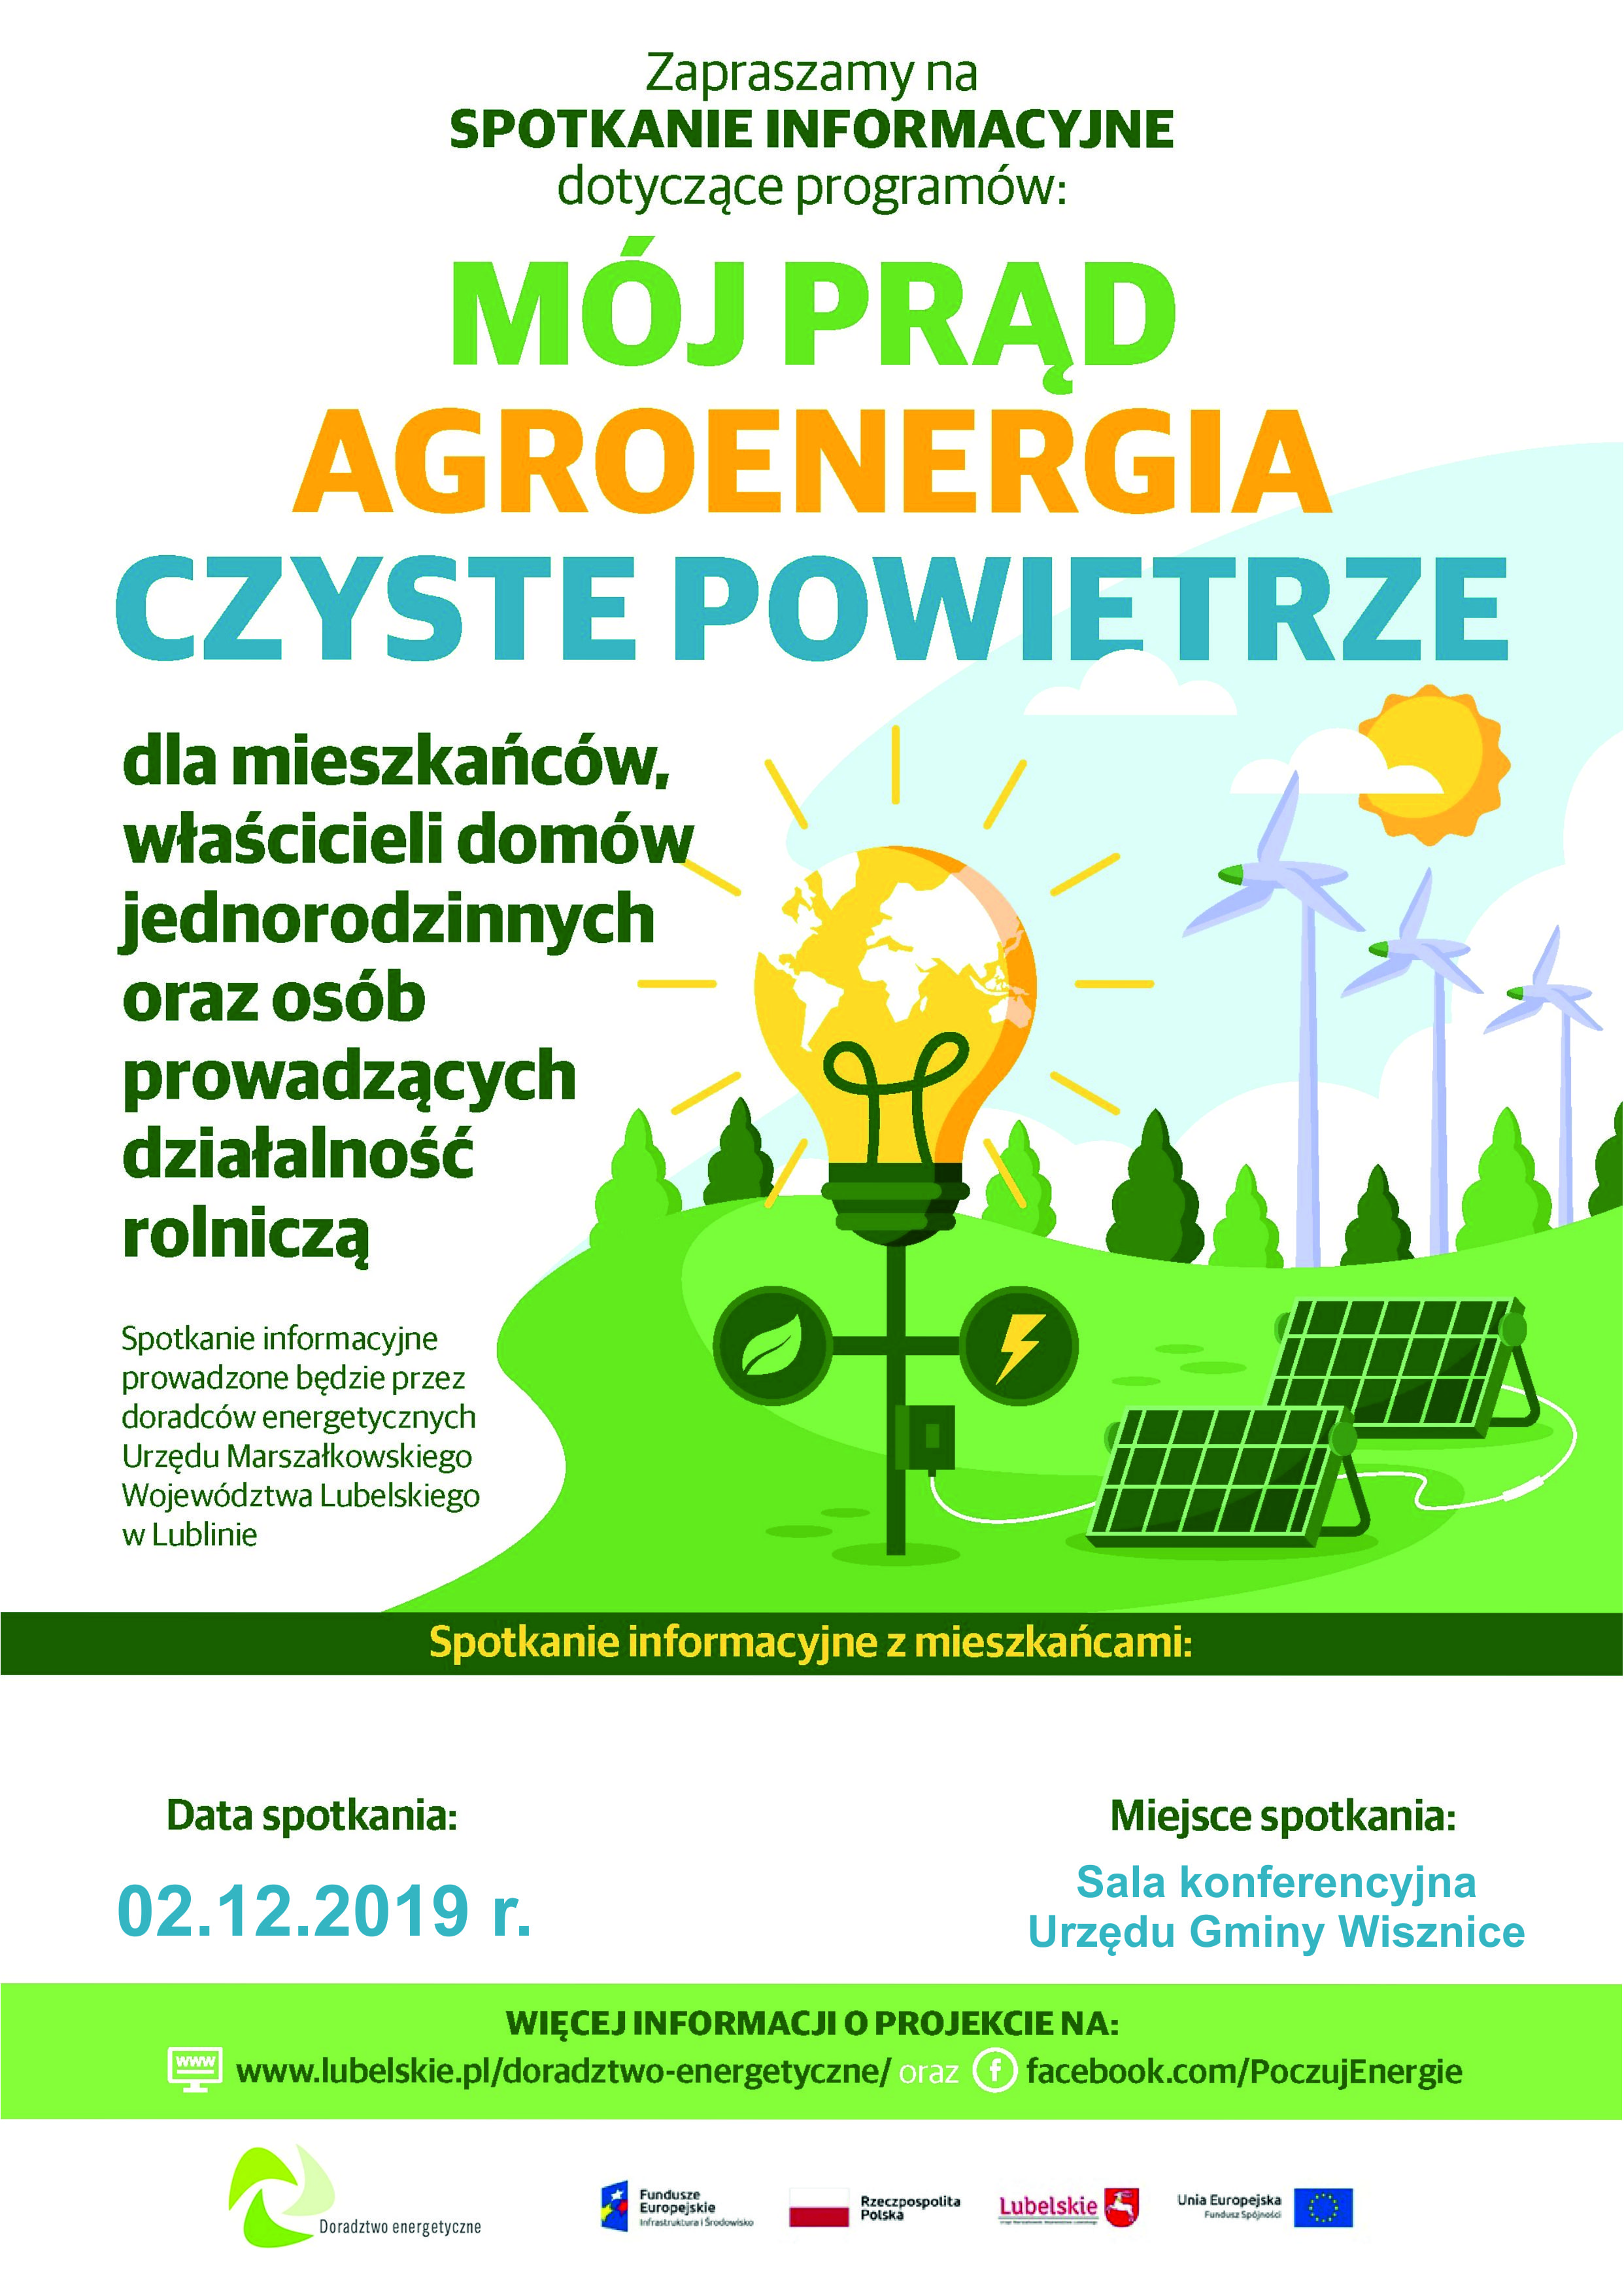 Spotkanie dla mieszkańców nt. programów "Mój prąd", "Agroenergia" i "Czyste Powietrze"